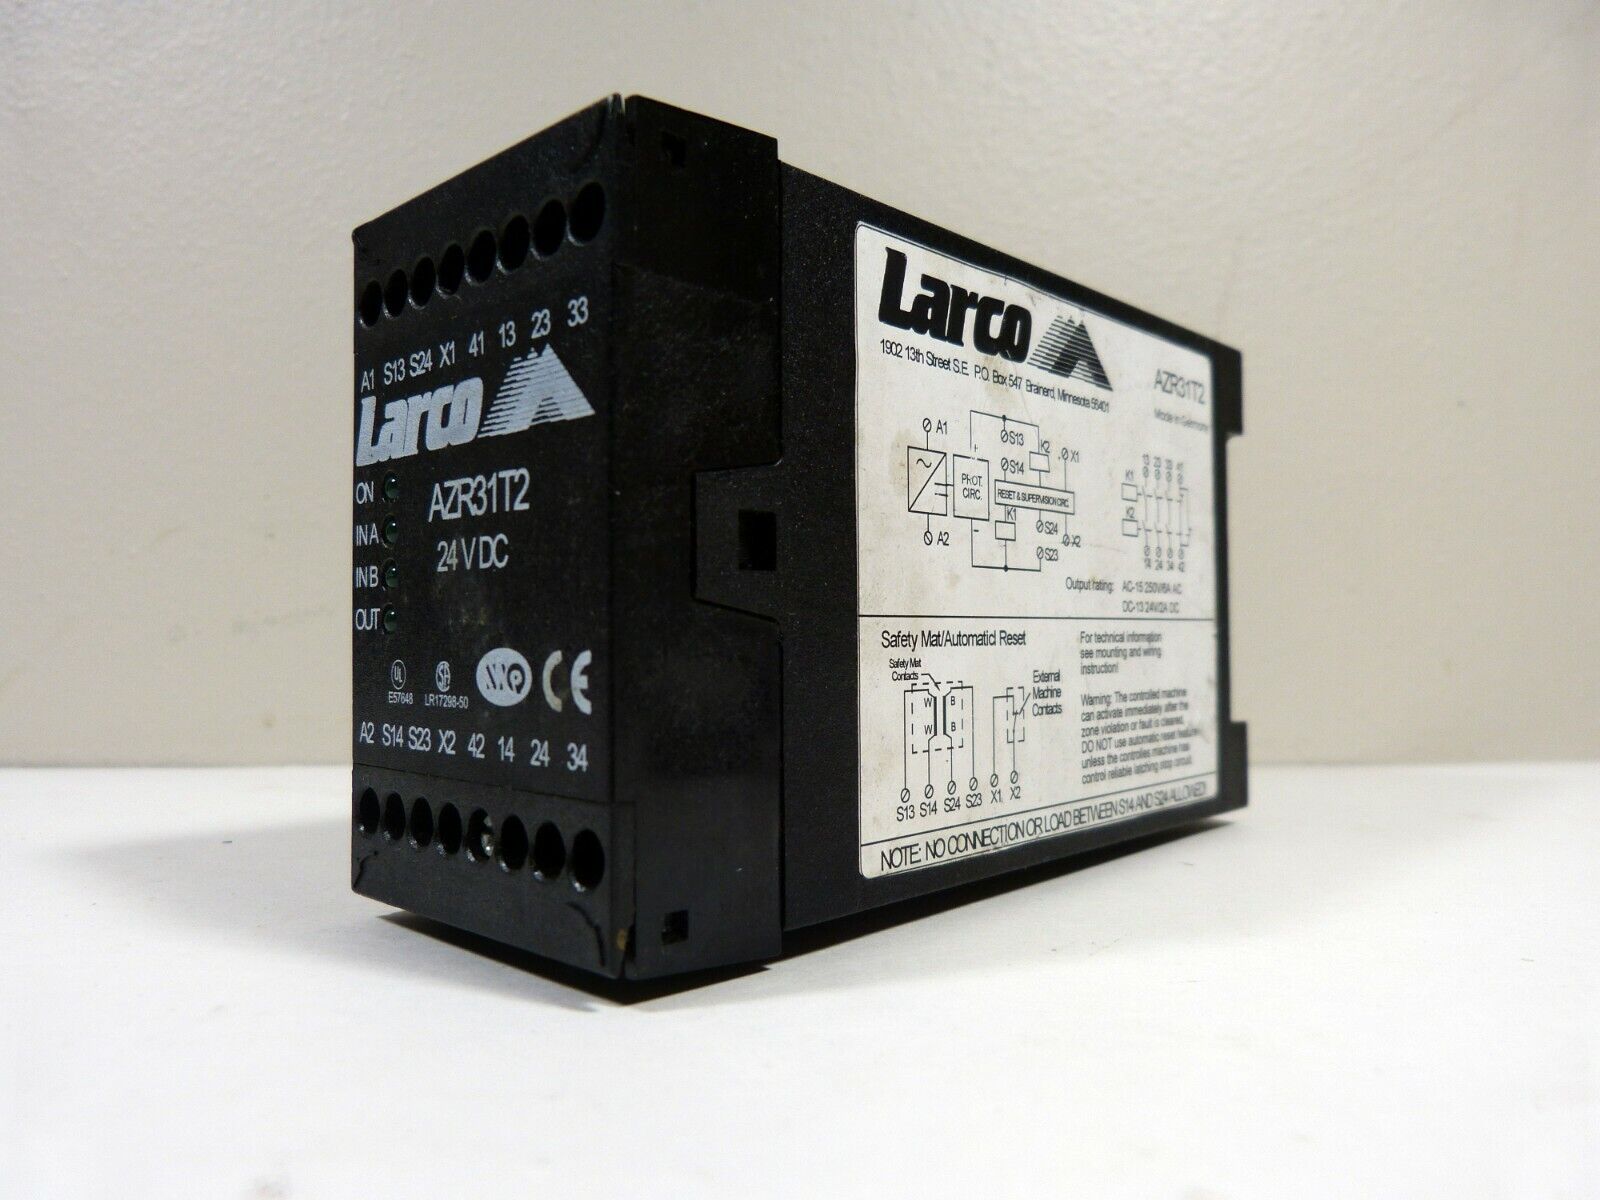 Larco Super sale AZR31T2 Safety 24VDC Rapid rise Relay